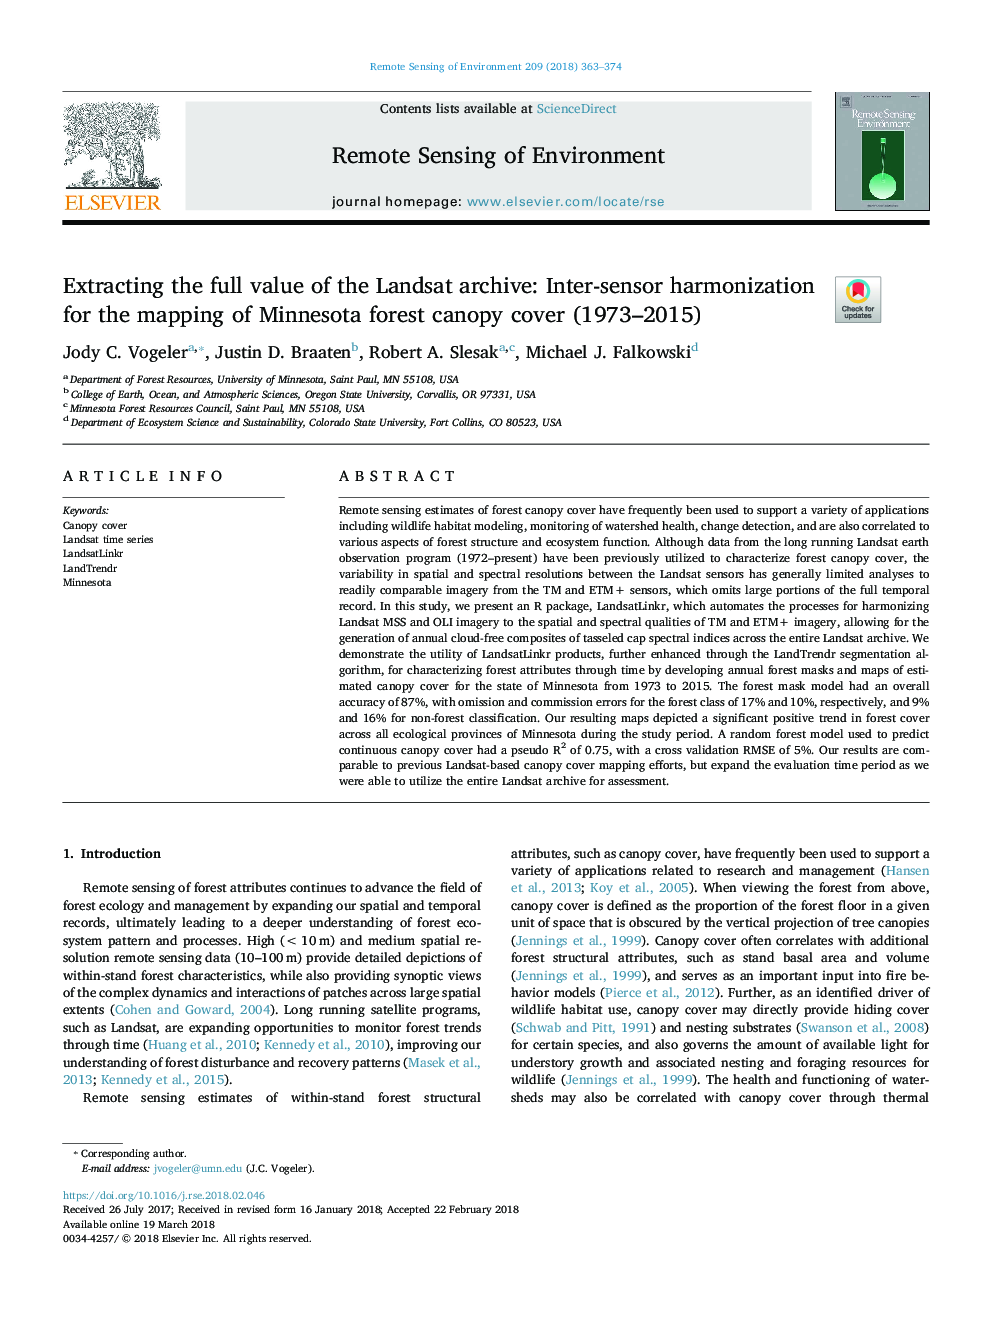 استخراج ارزش کامل آرشیو لندست: هماهنگ سازی بین سنسورها برای نقشه برداری پوشش سایبان جنگل مینه سوتا (1973-2015) 